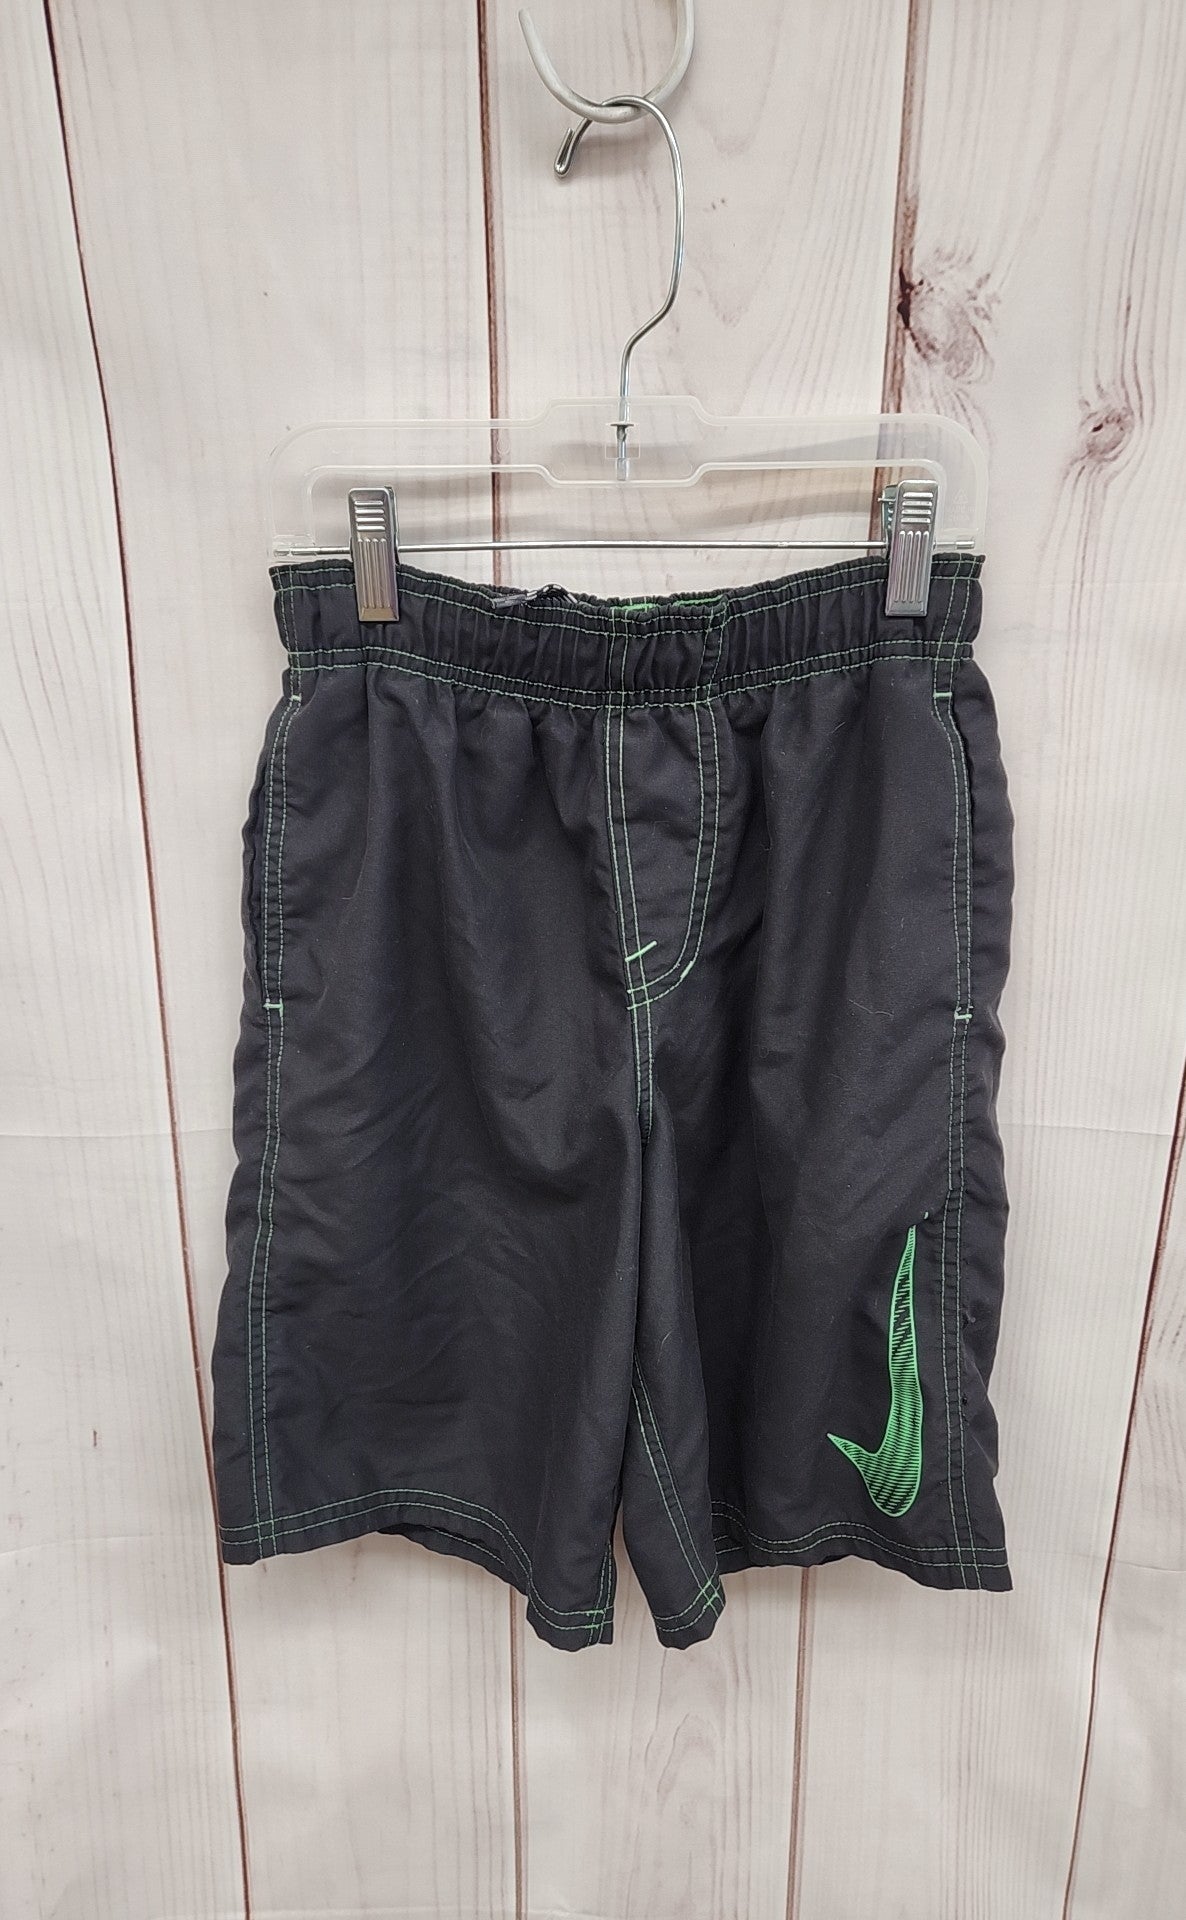 Nike Boy's Size 10/12 Black Swim Trunks